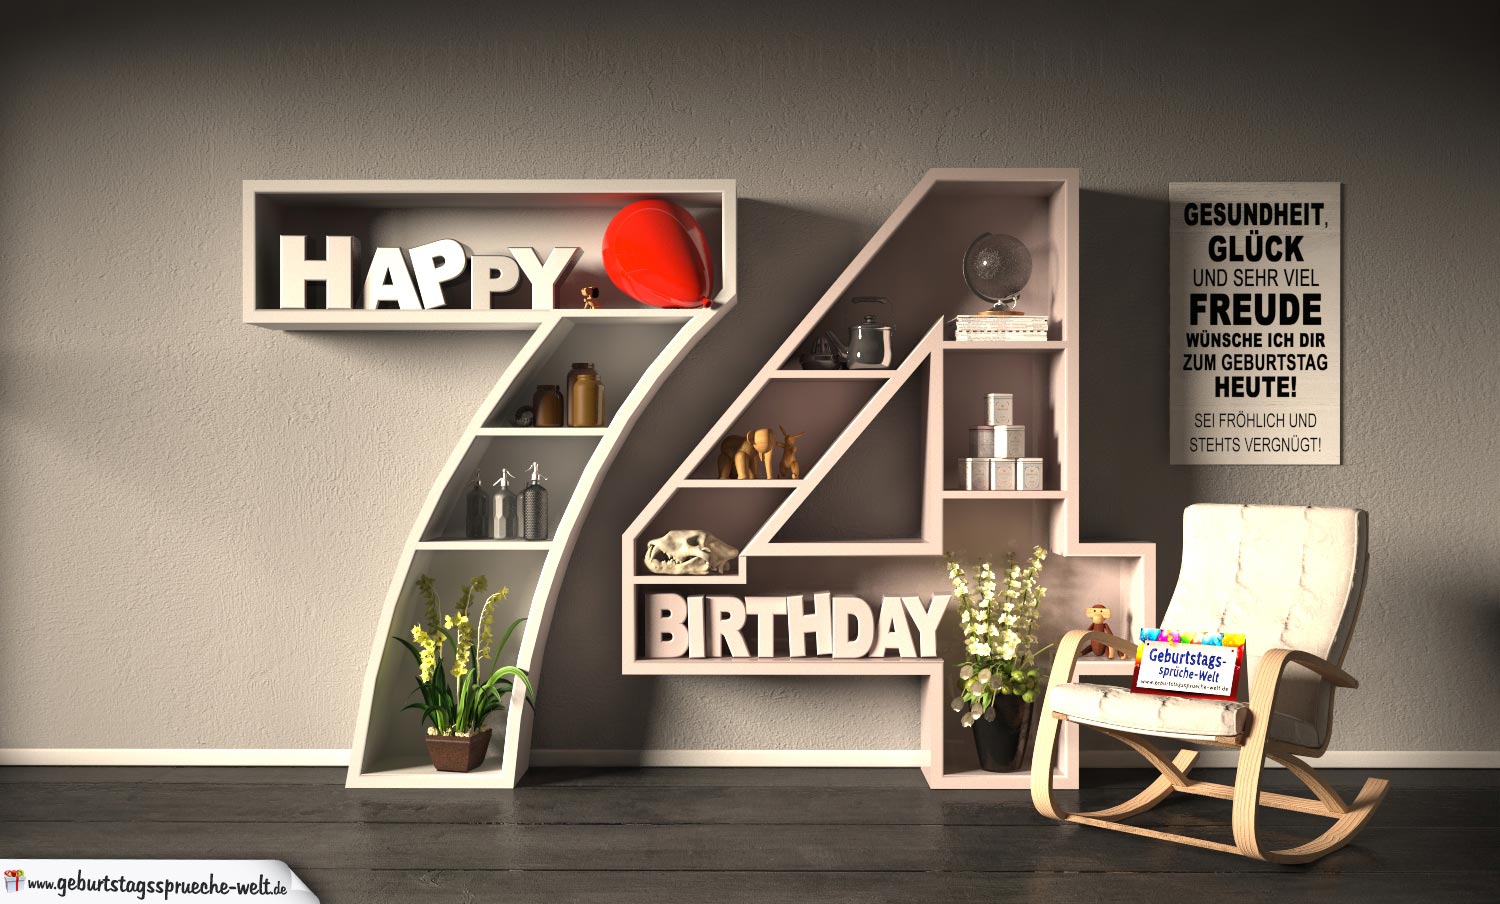 46++ Sprueche zum 79 geburtstag , Kostenlose Geburtstagskarte Happy Birthday mit Spruch zum 74. Geburtstag GeburtstagssprücheWelt